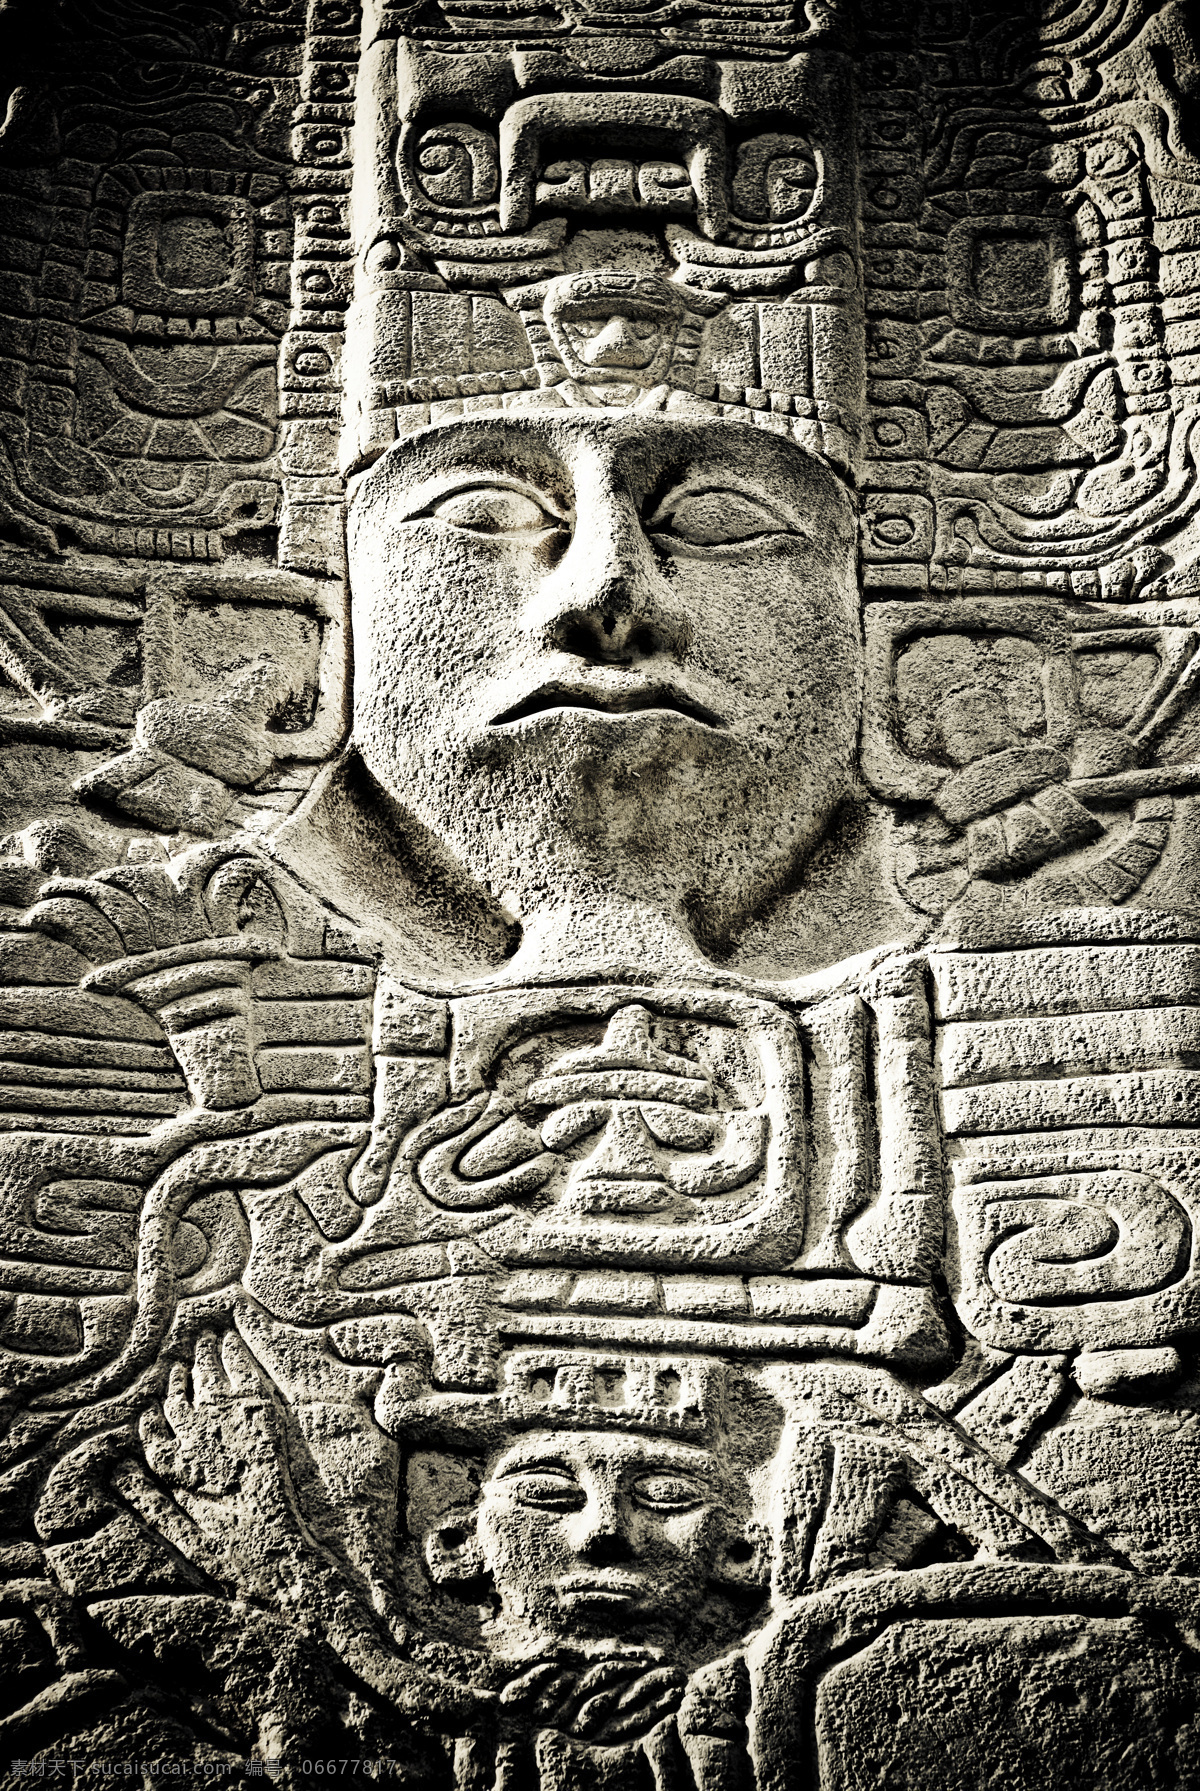 玛雅 图腾 玛雅预言 世界末日预言 玛雅文化 玛雅文明 玛雅图腾 其他类别 生活百科